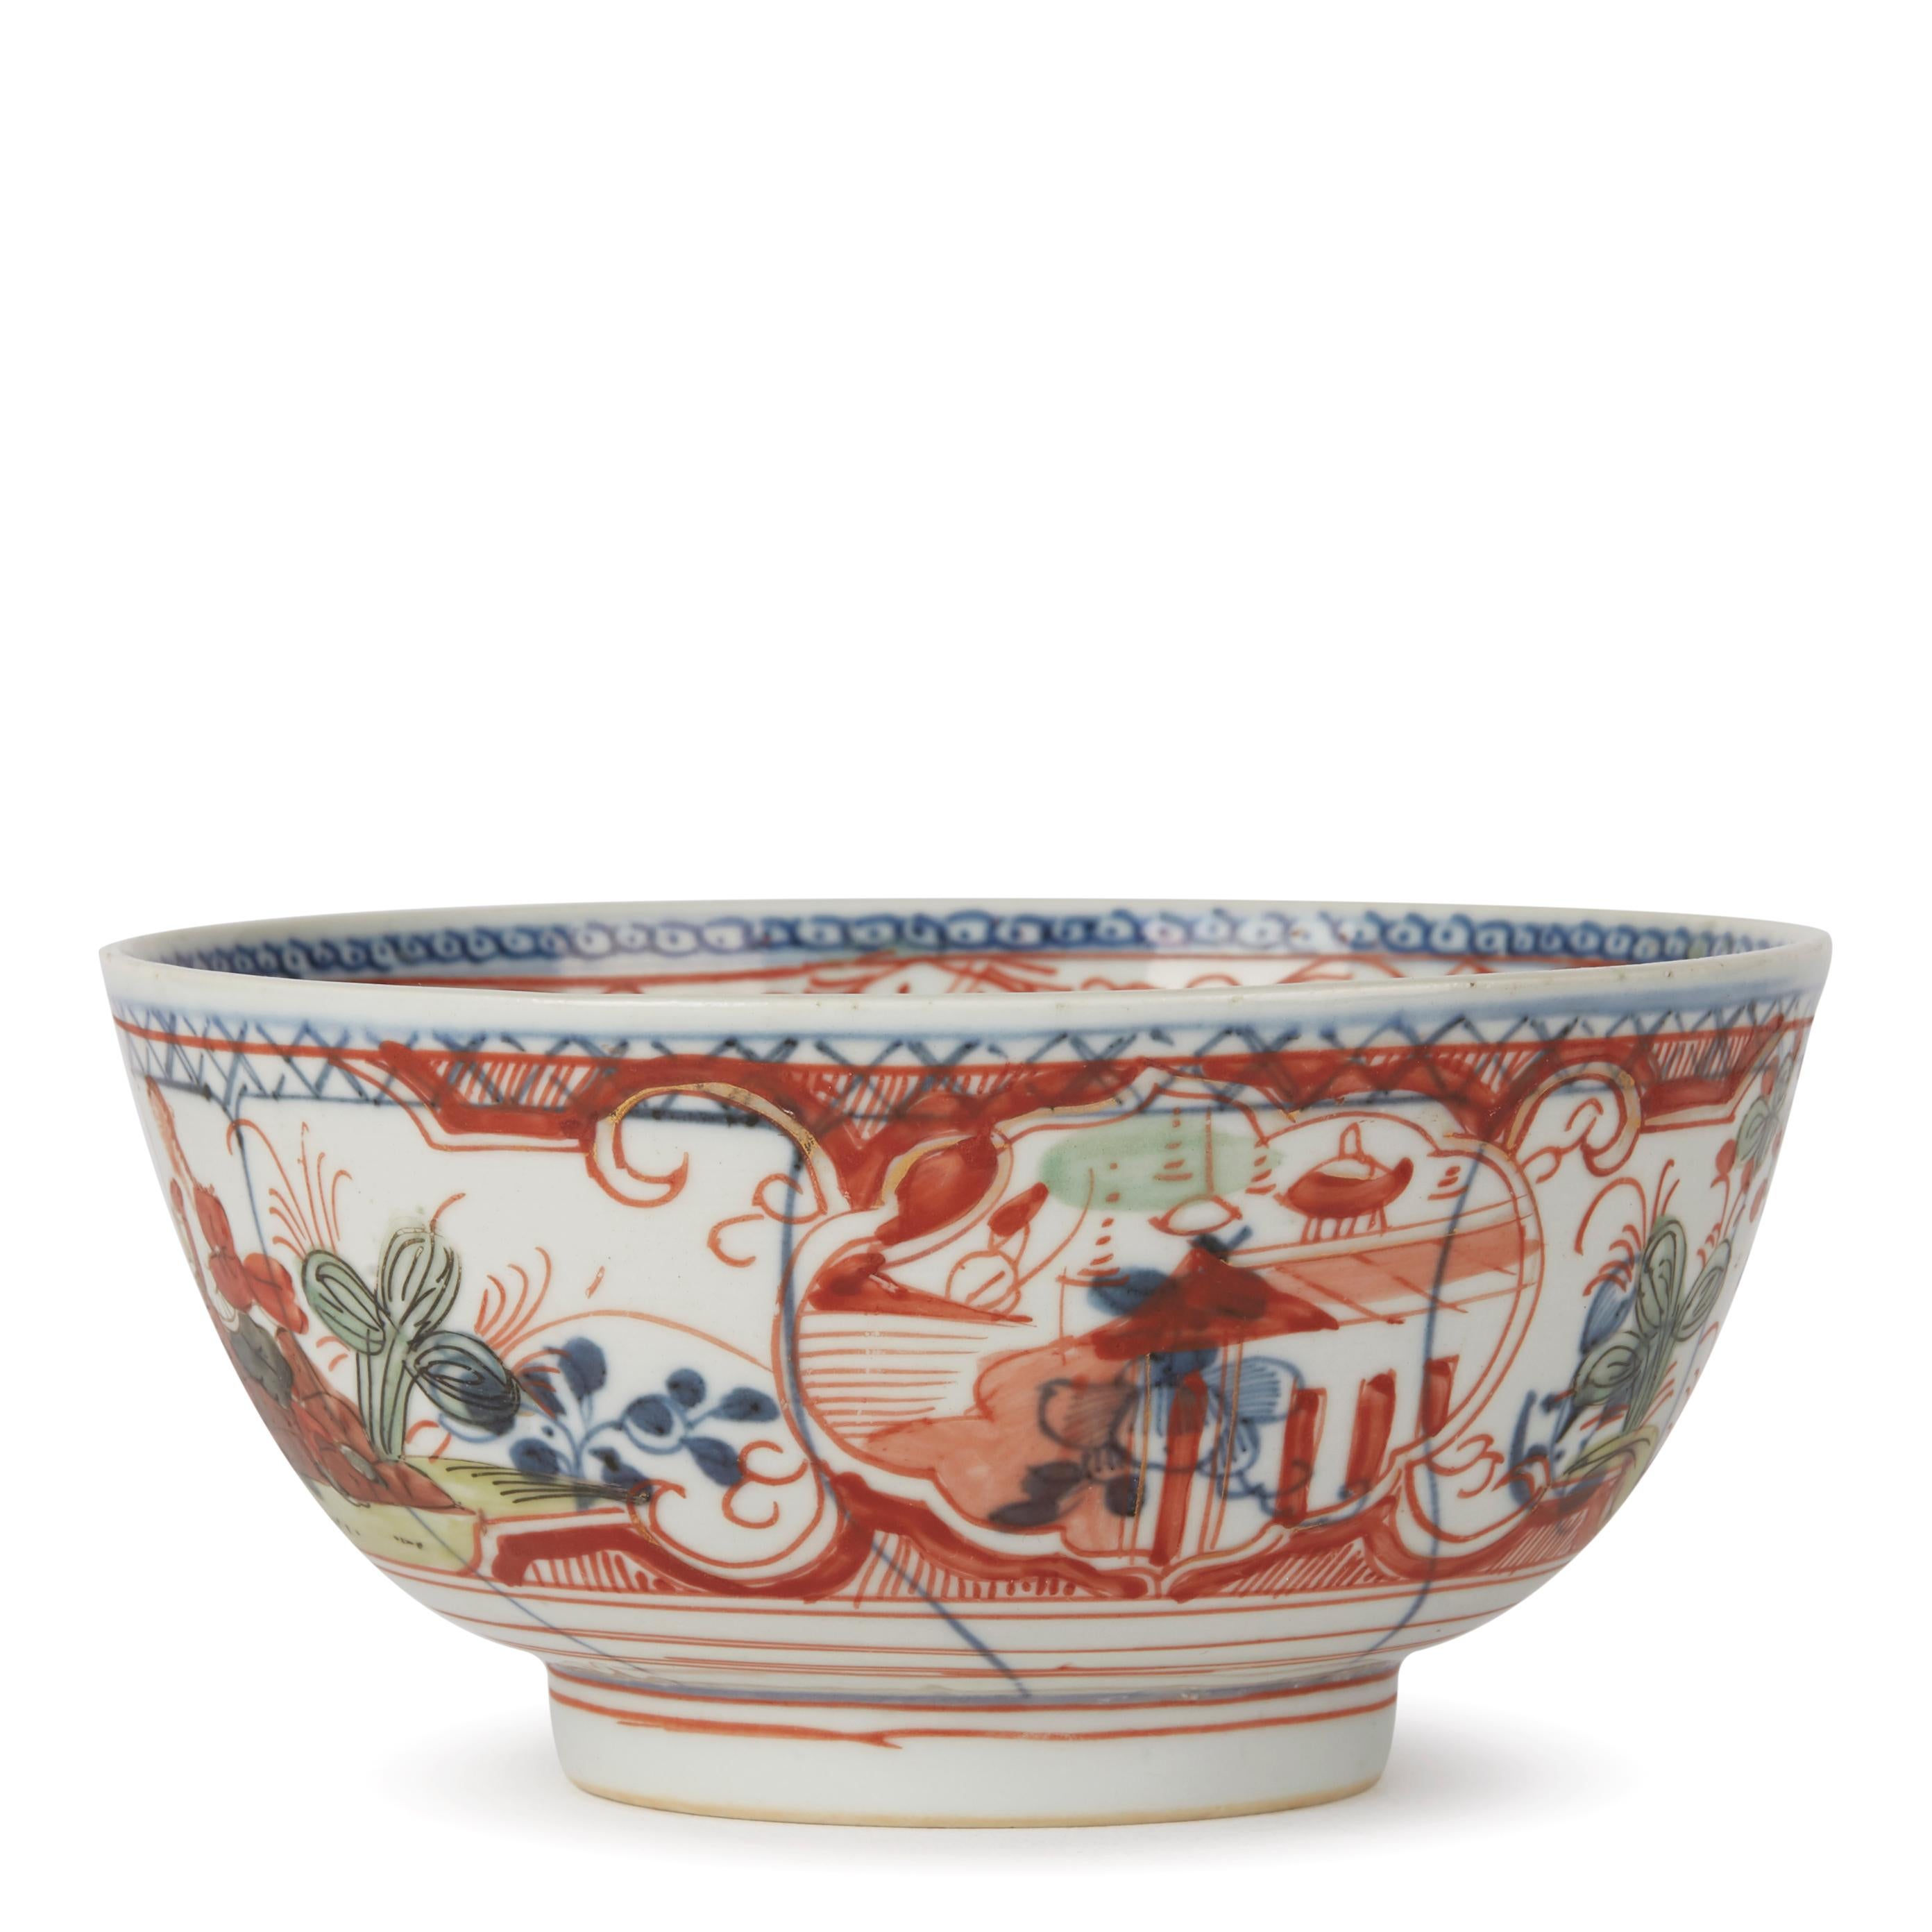 Chinesische übermalte chinesische Porzellanschale mit Figuren, 1720-1740 (Handbemalt)